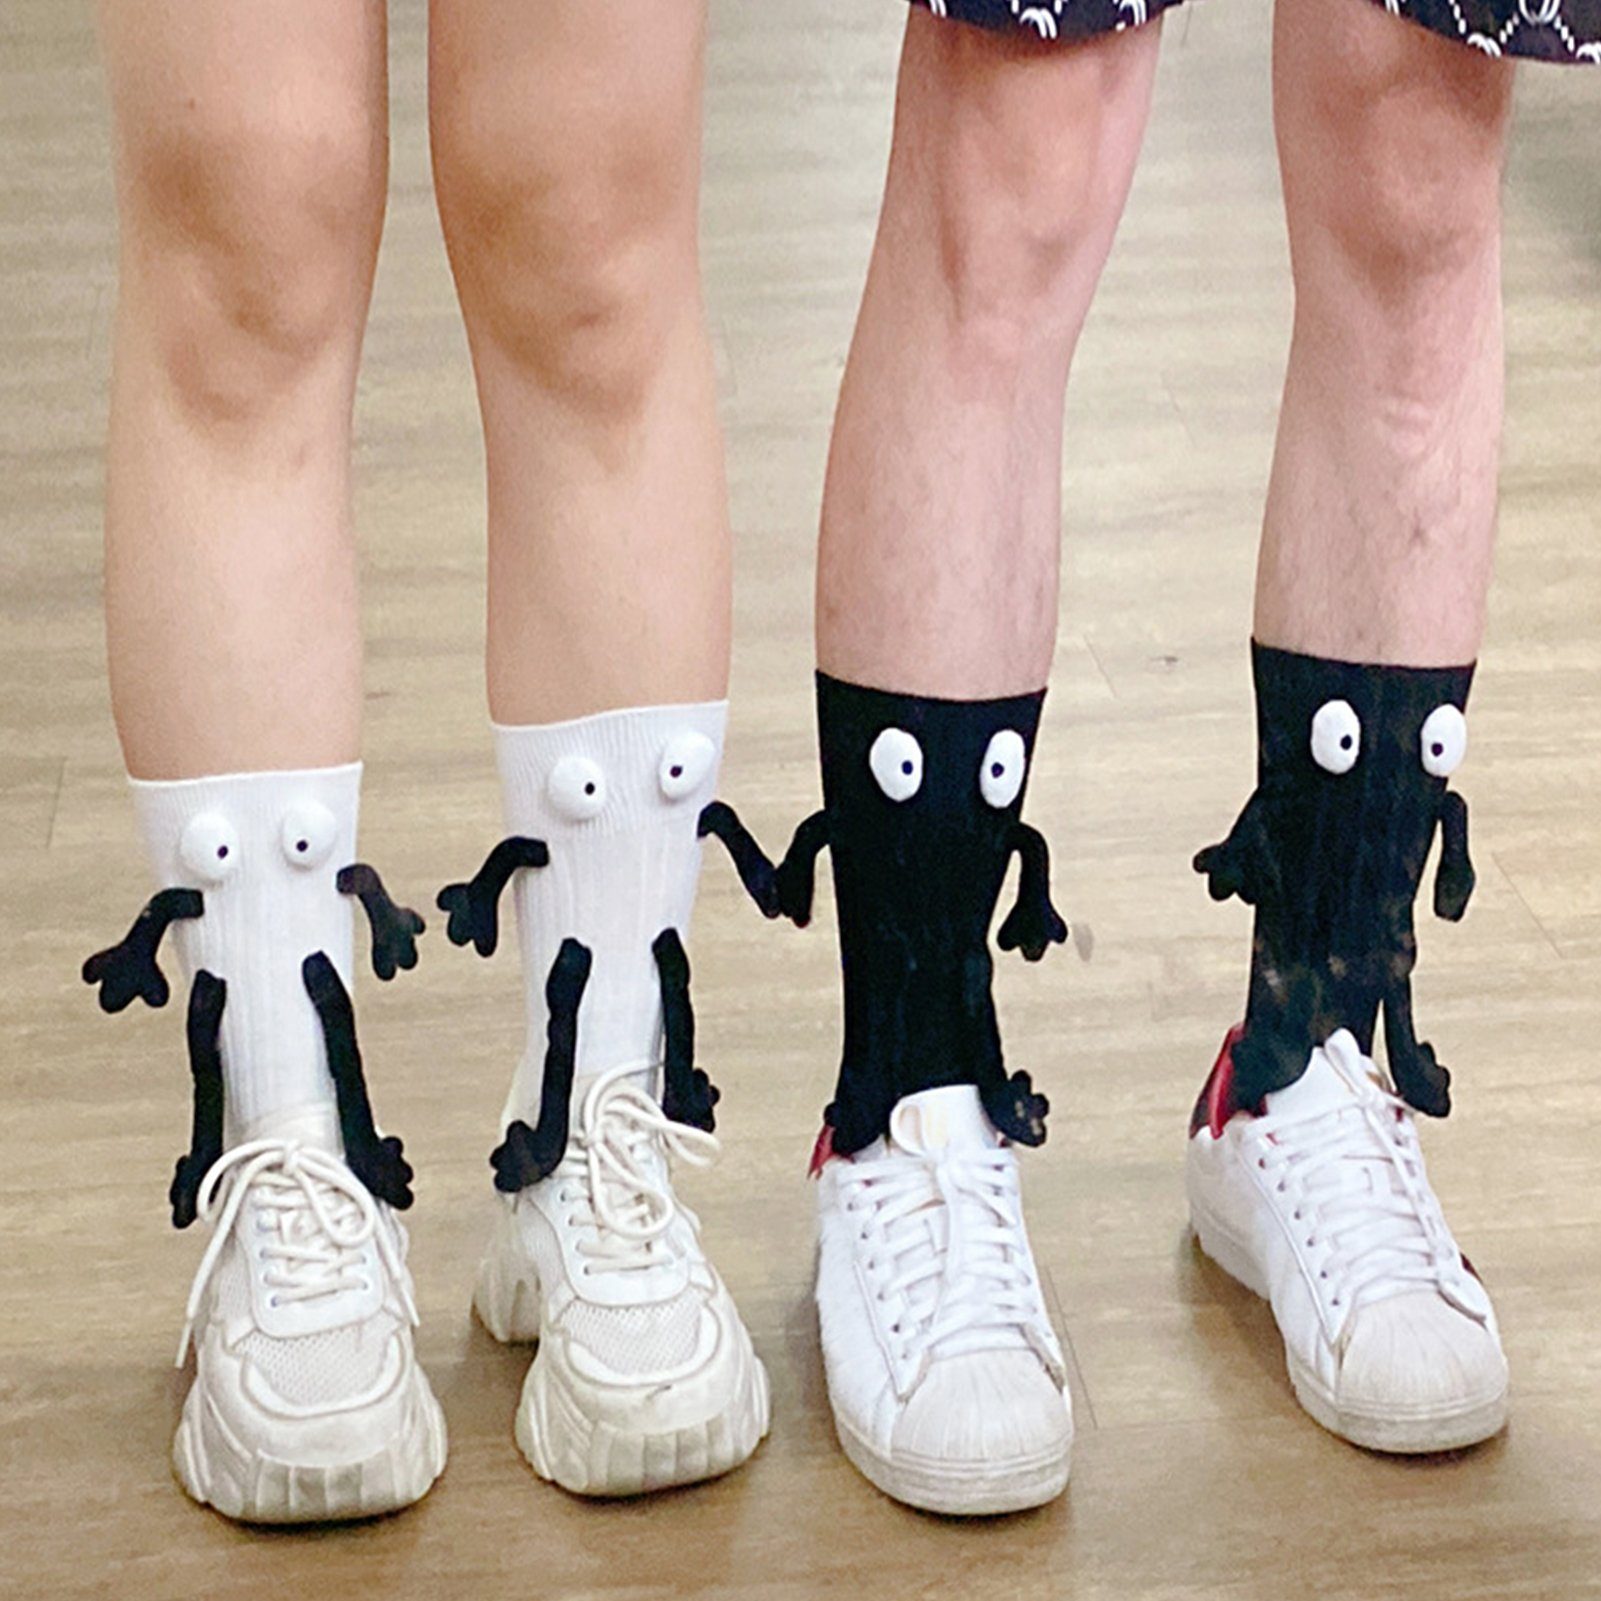 Rutaqian Socken Socken, lustige Socken für Männer und Frauen für 1 Paare Weihnachtssocken,Unisex Hand in Hand Socken Schwarz